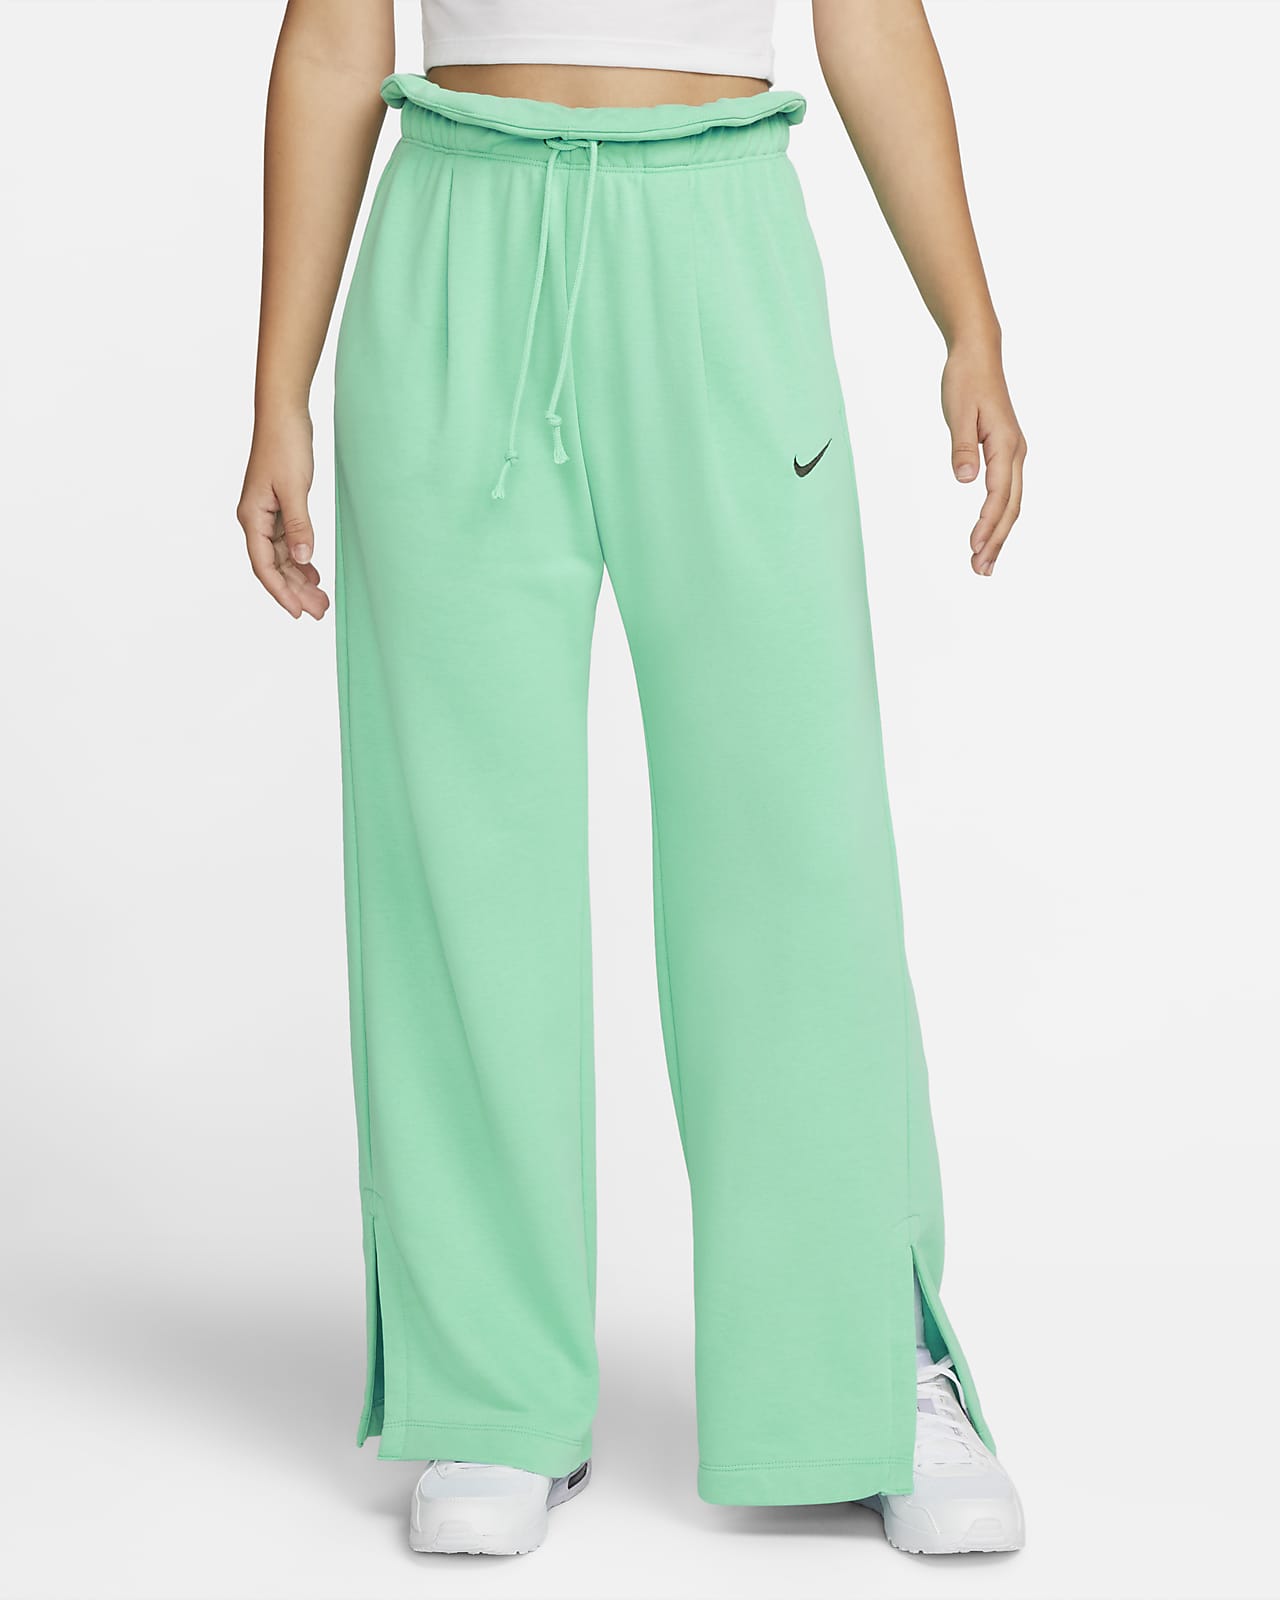 Voorschrift sarcoom chef Nike Sportswear Everyday Modern Women's High-Waisted Fleece Open-Hem Pants.  Nike.com